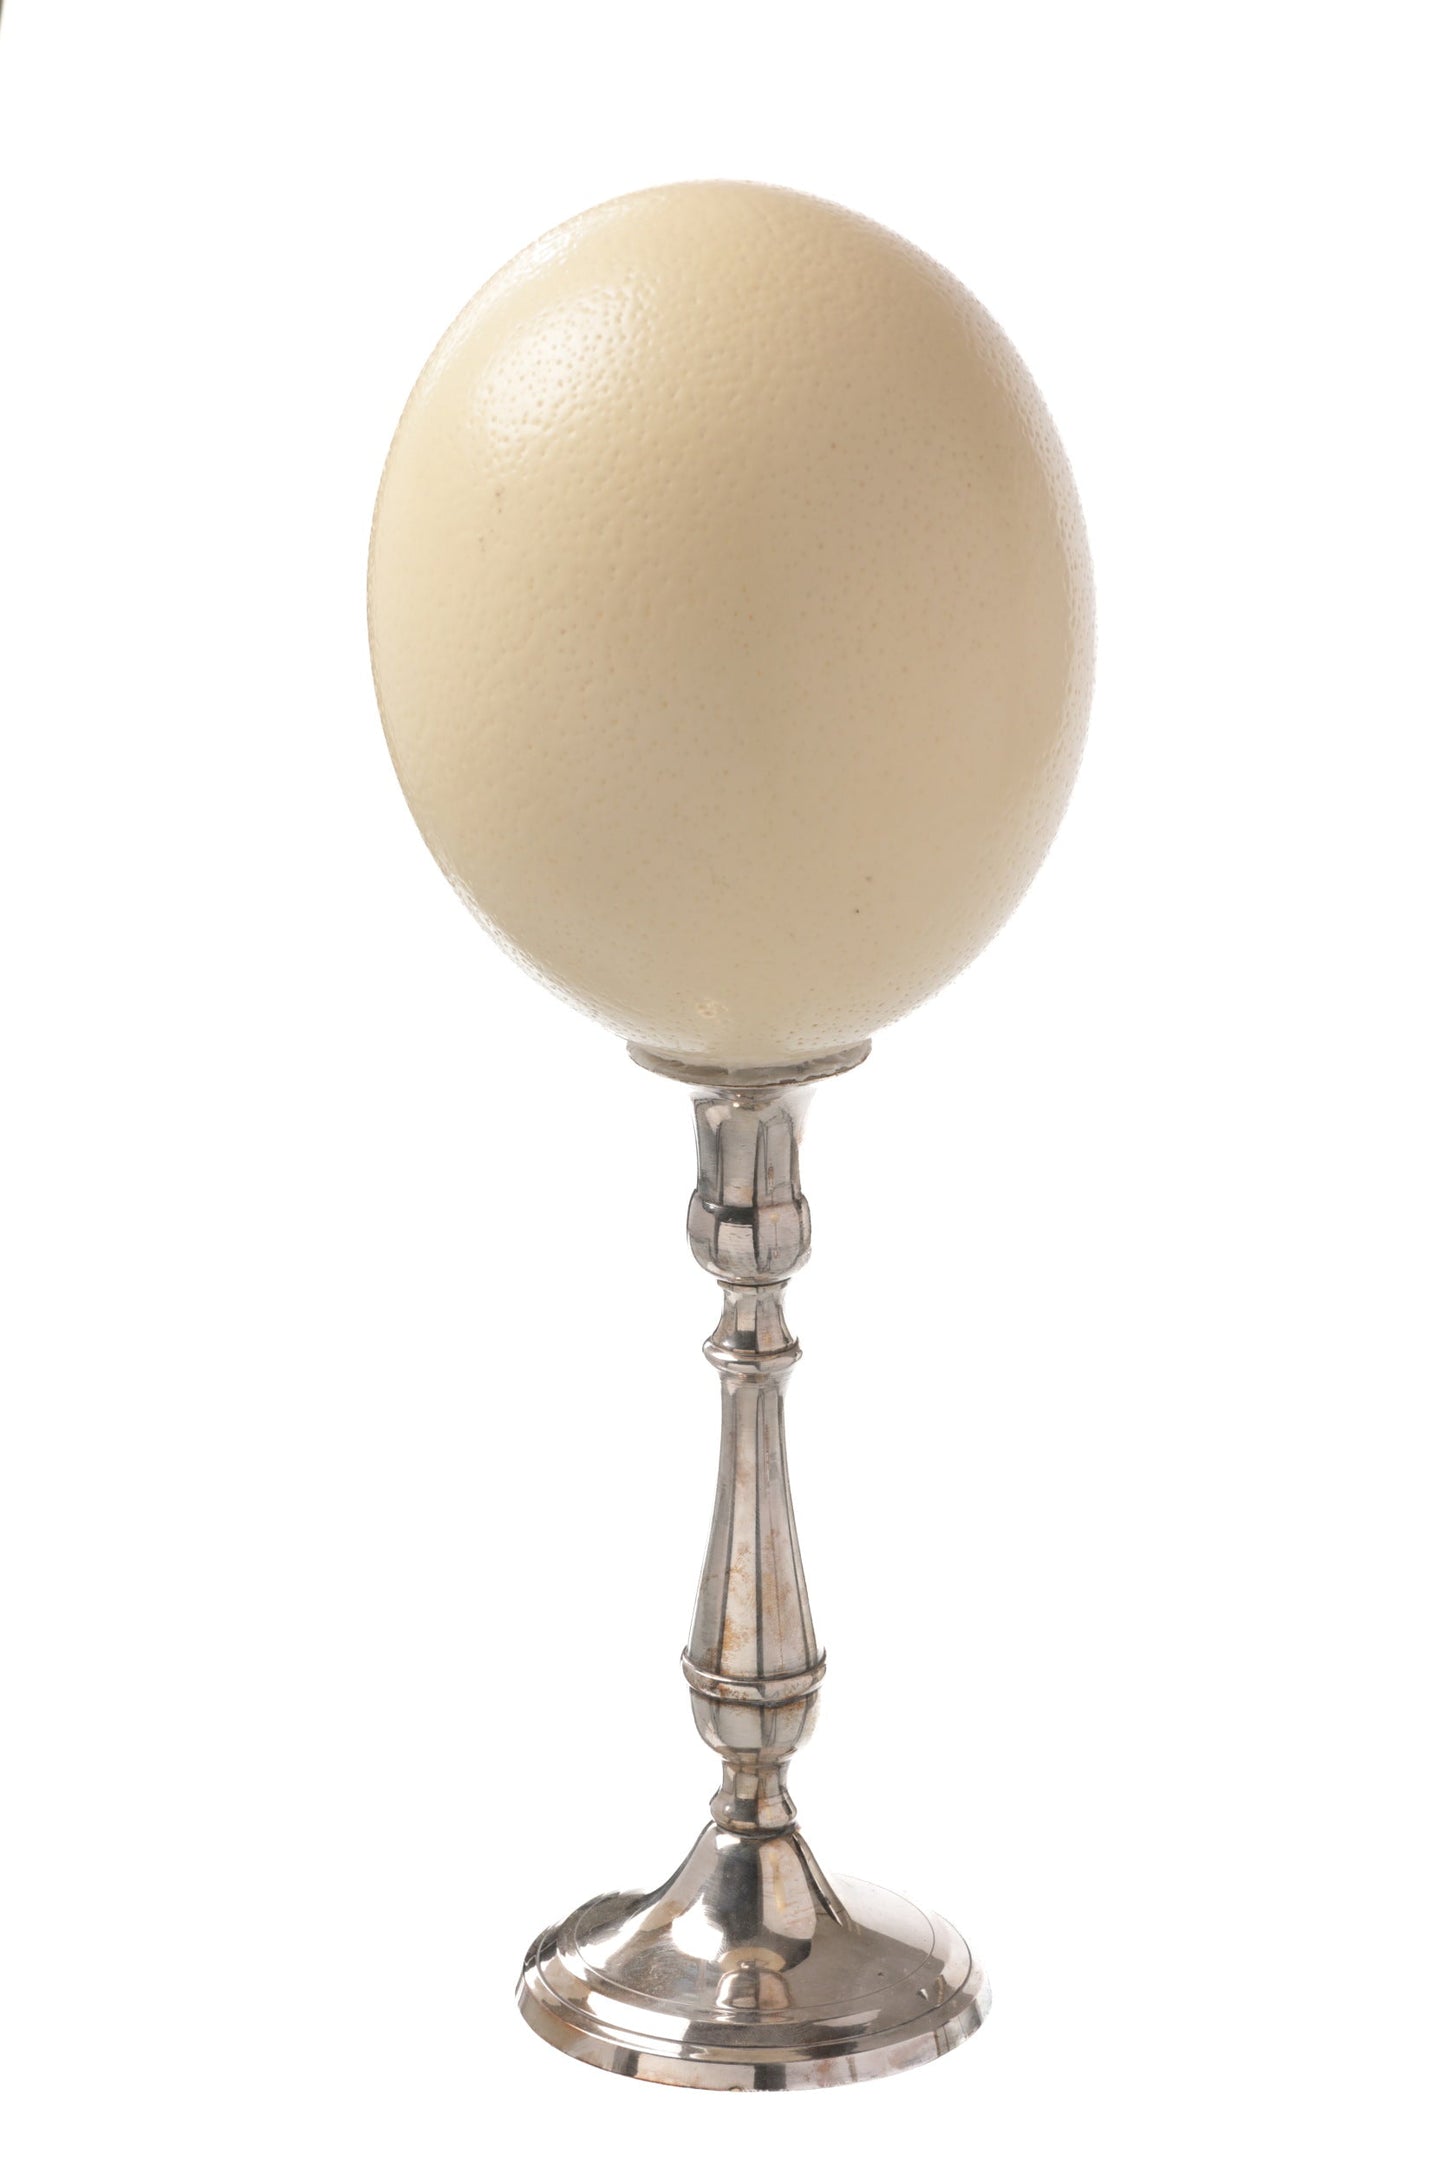 Coppia uova di struzzo anni 60